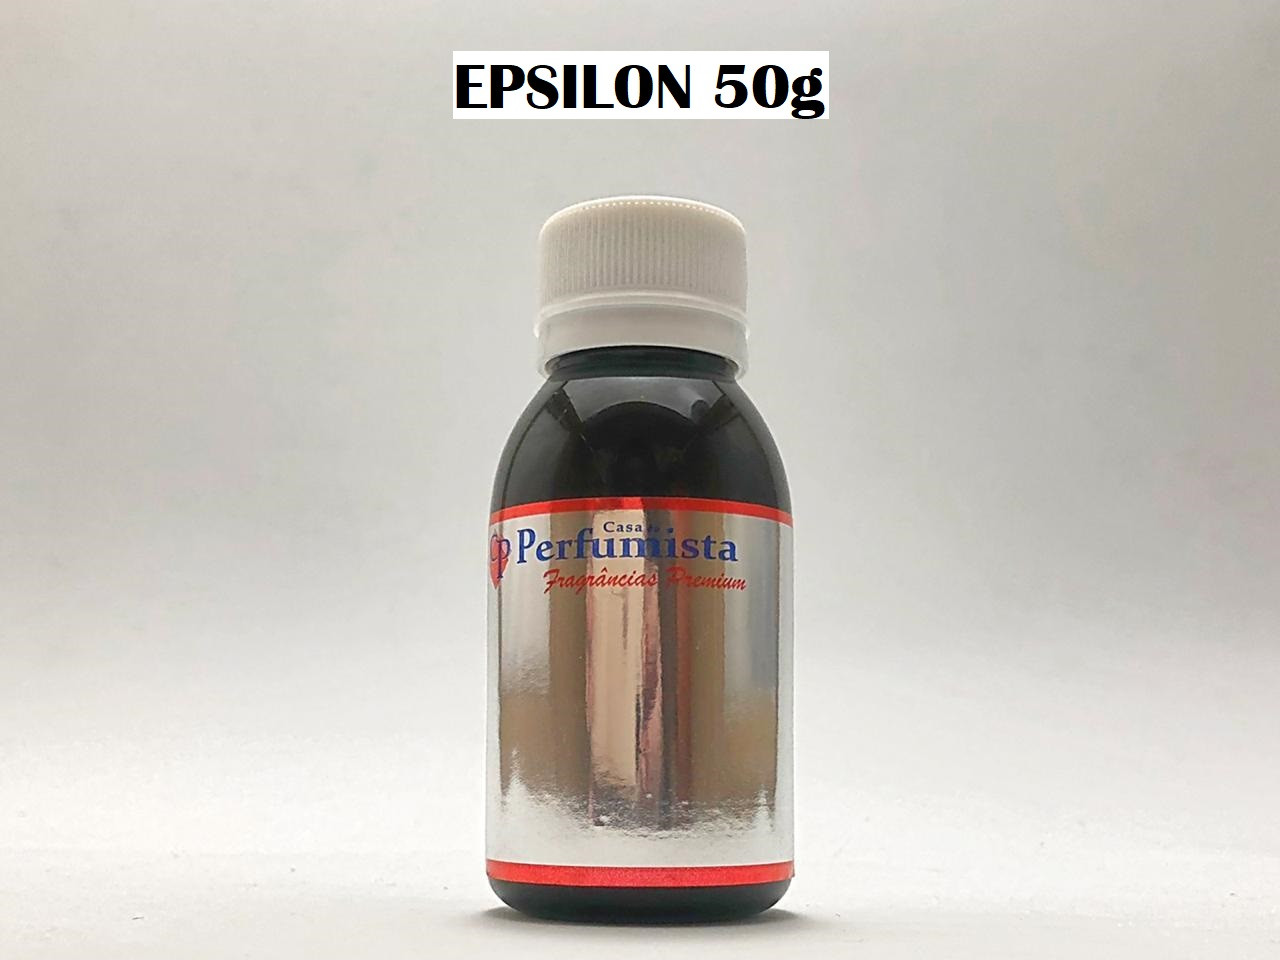 EPSILON 50g - Inspiração: PI Masculino